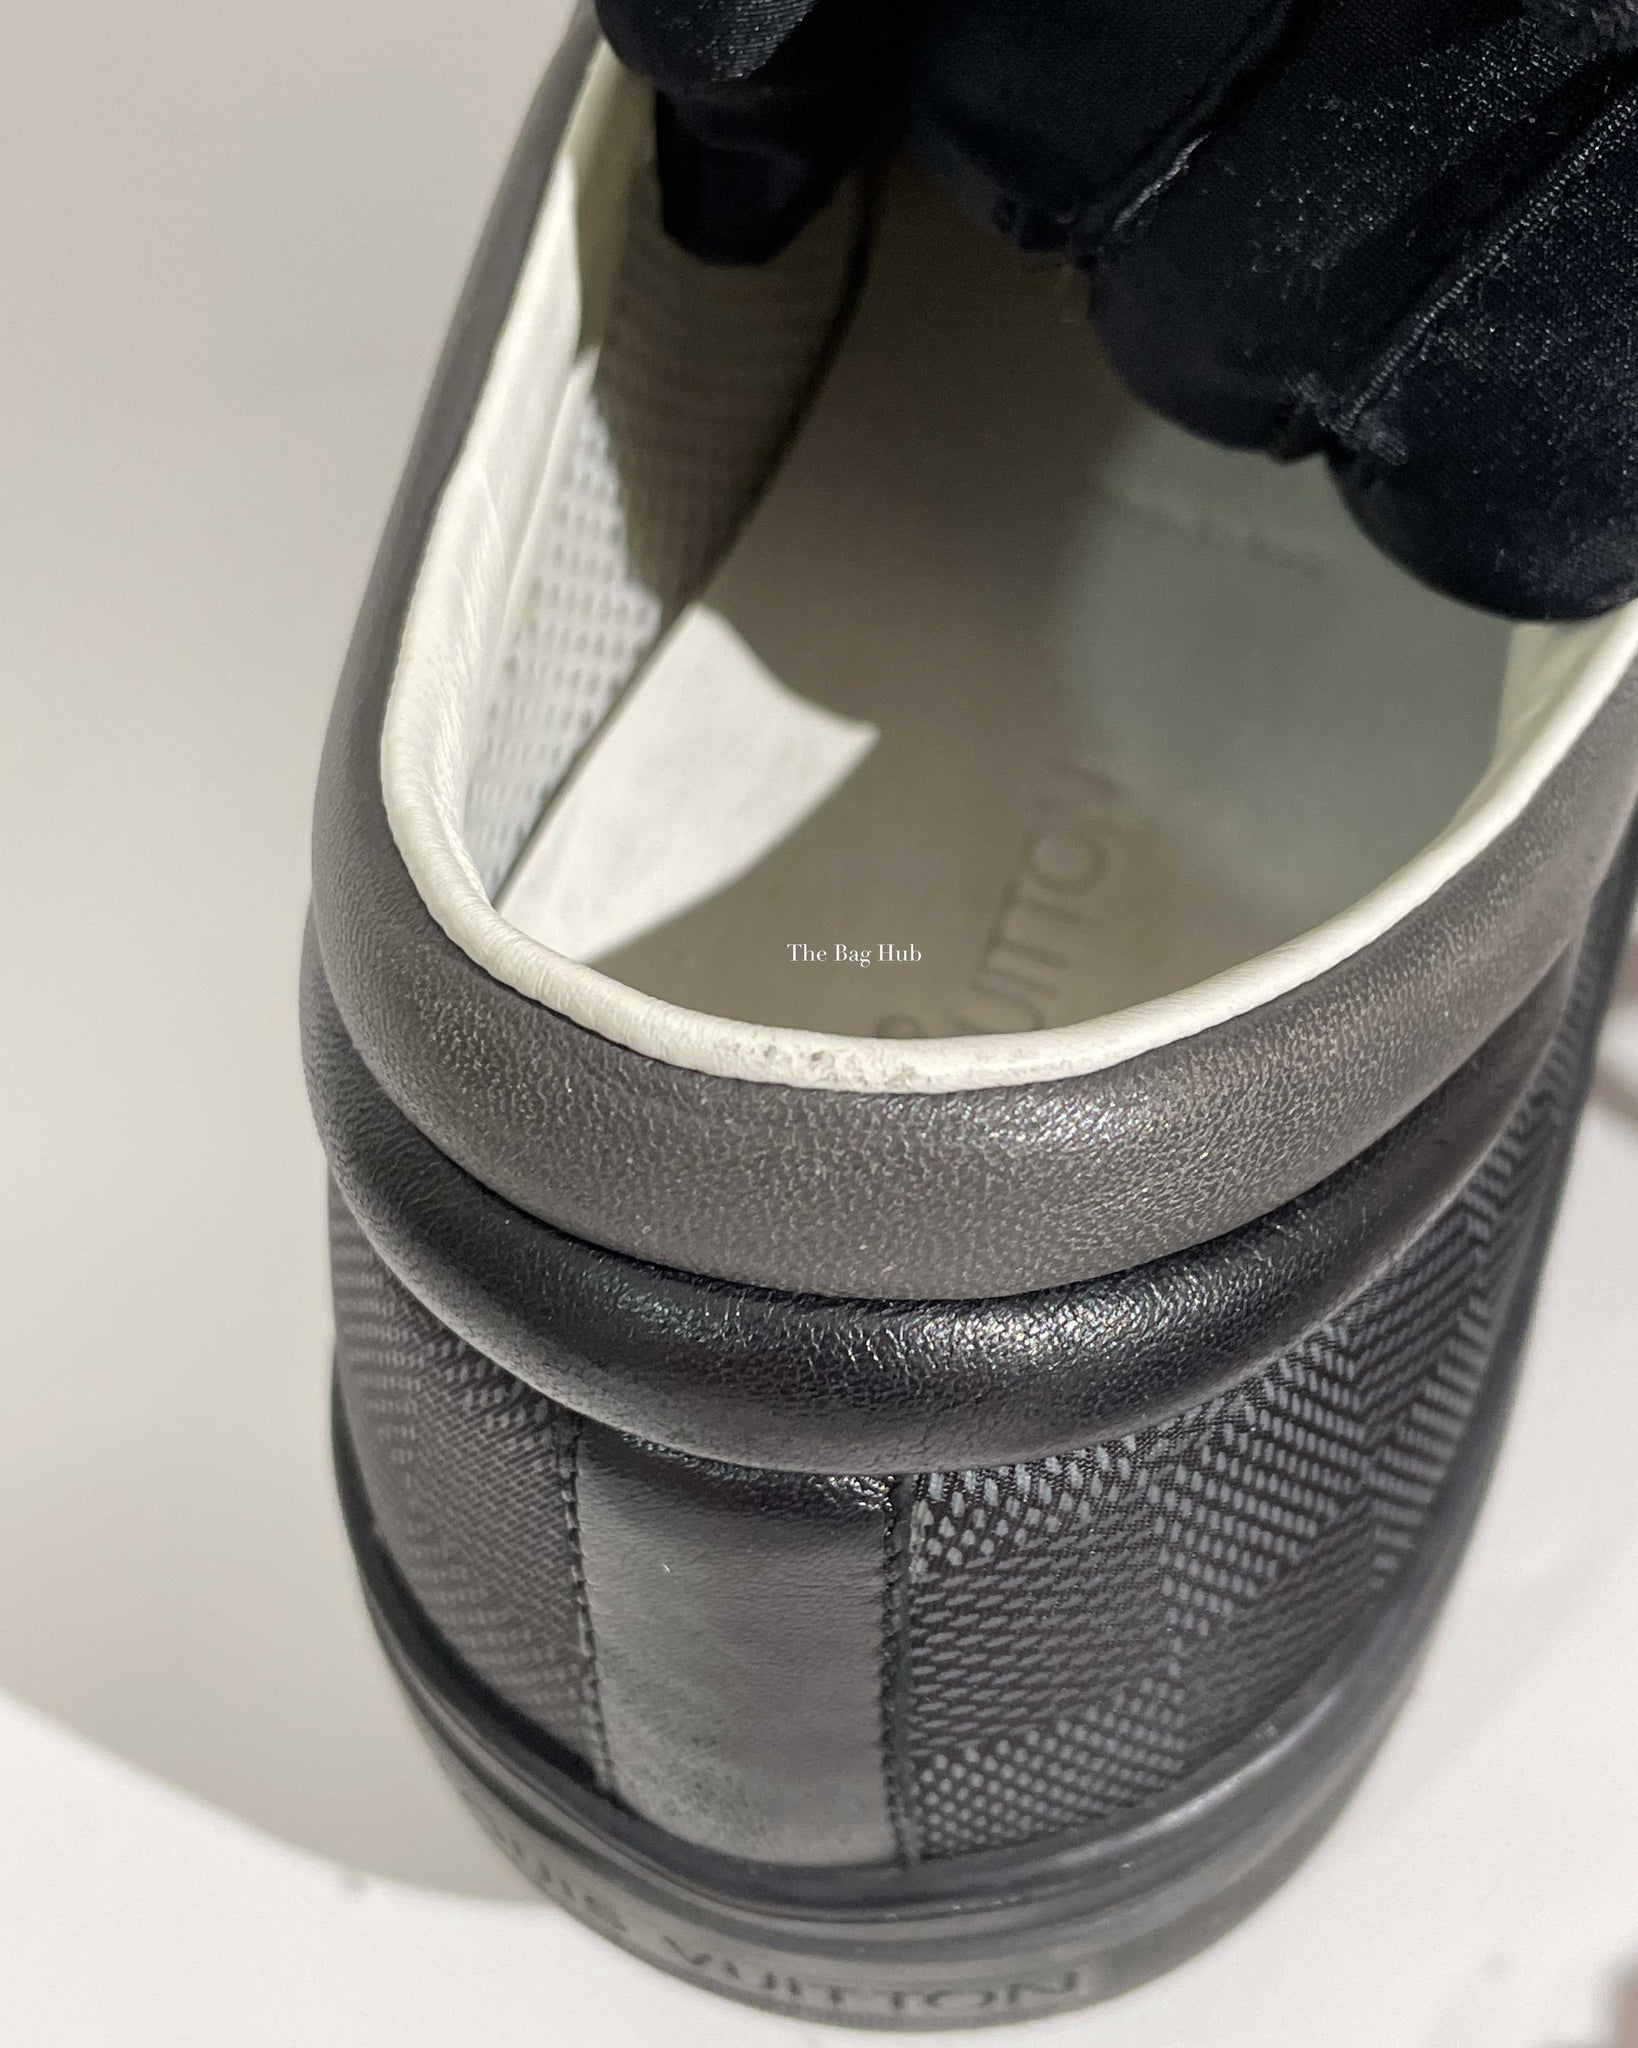 Louis Vuitton Damier Graphite Nylon Men's Sneakers Size 10, Designer Brand, Authentic Louis Vuitton